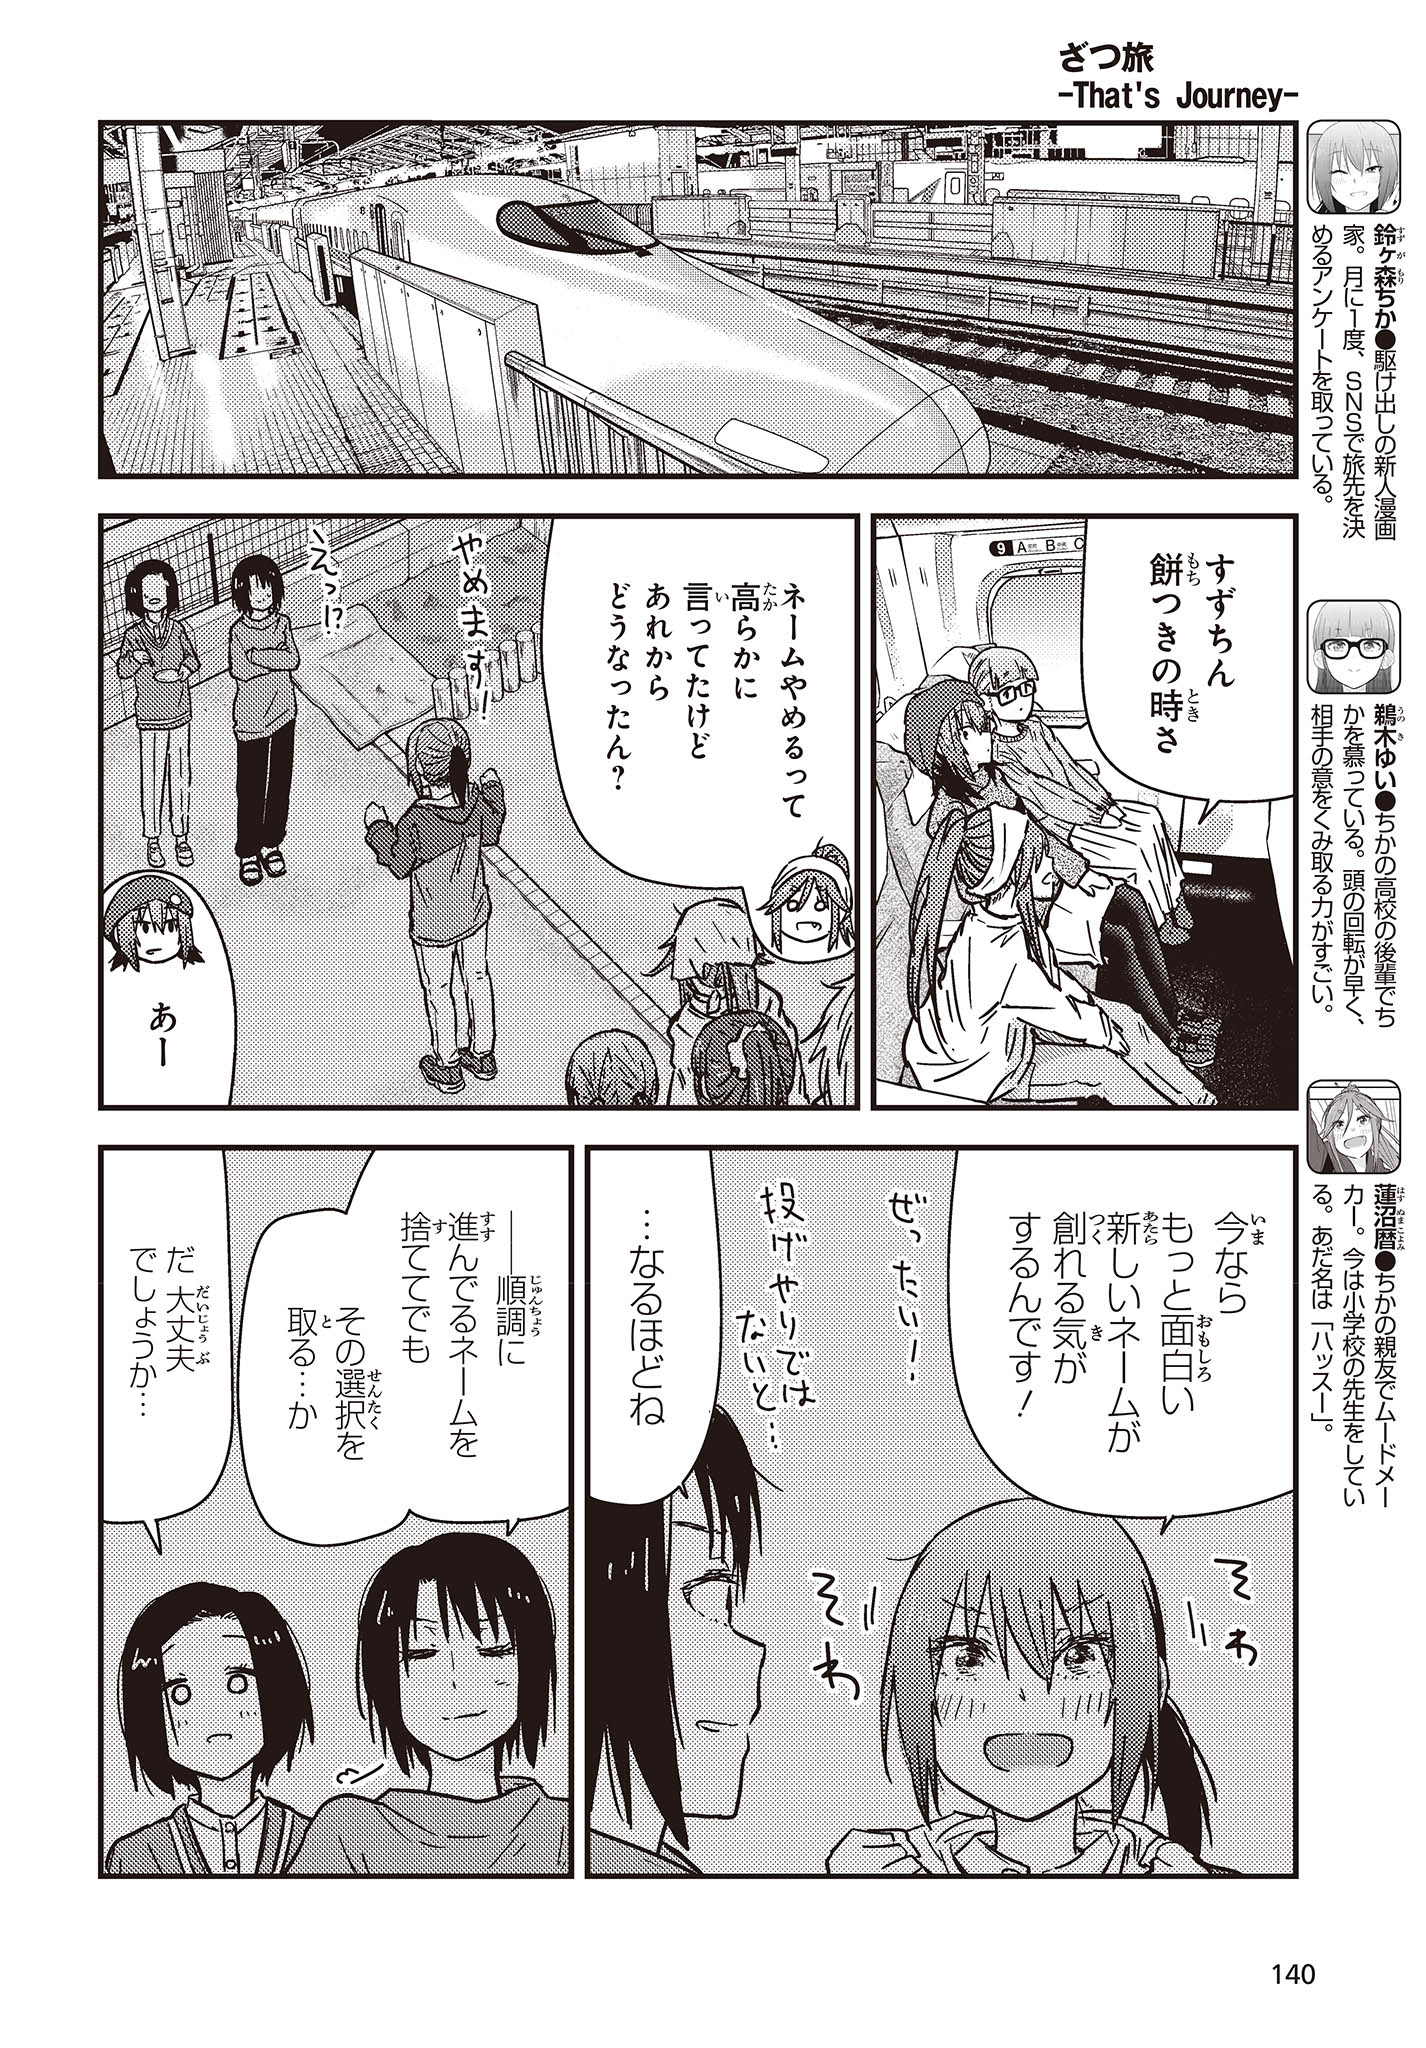 ざつ旅-That's Journey- 第30話 - Page 4